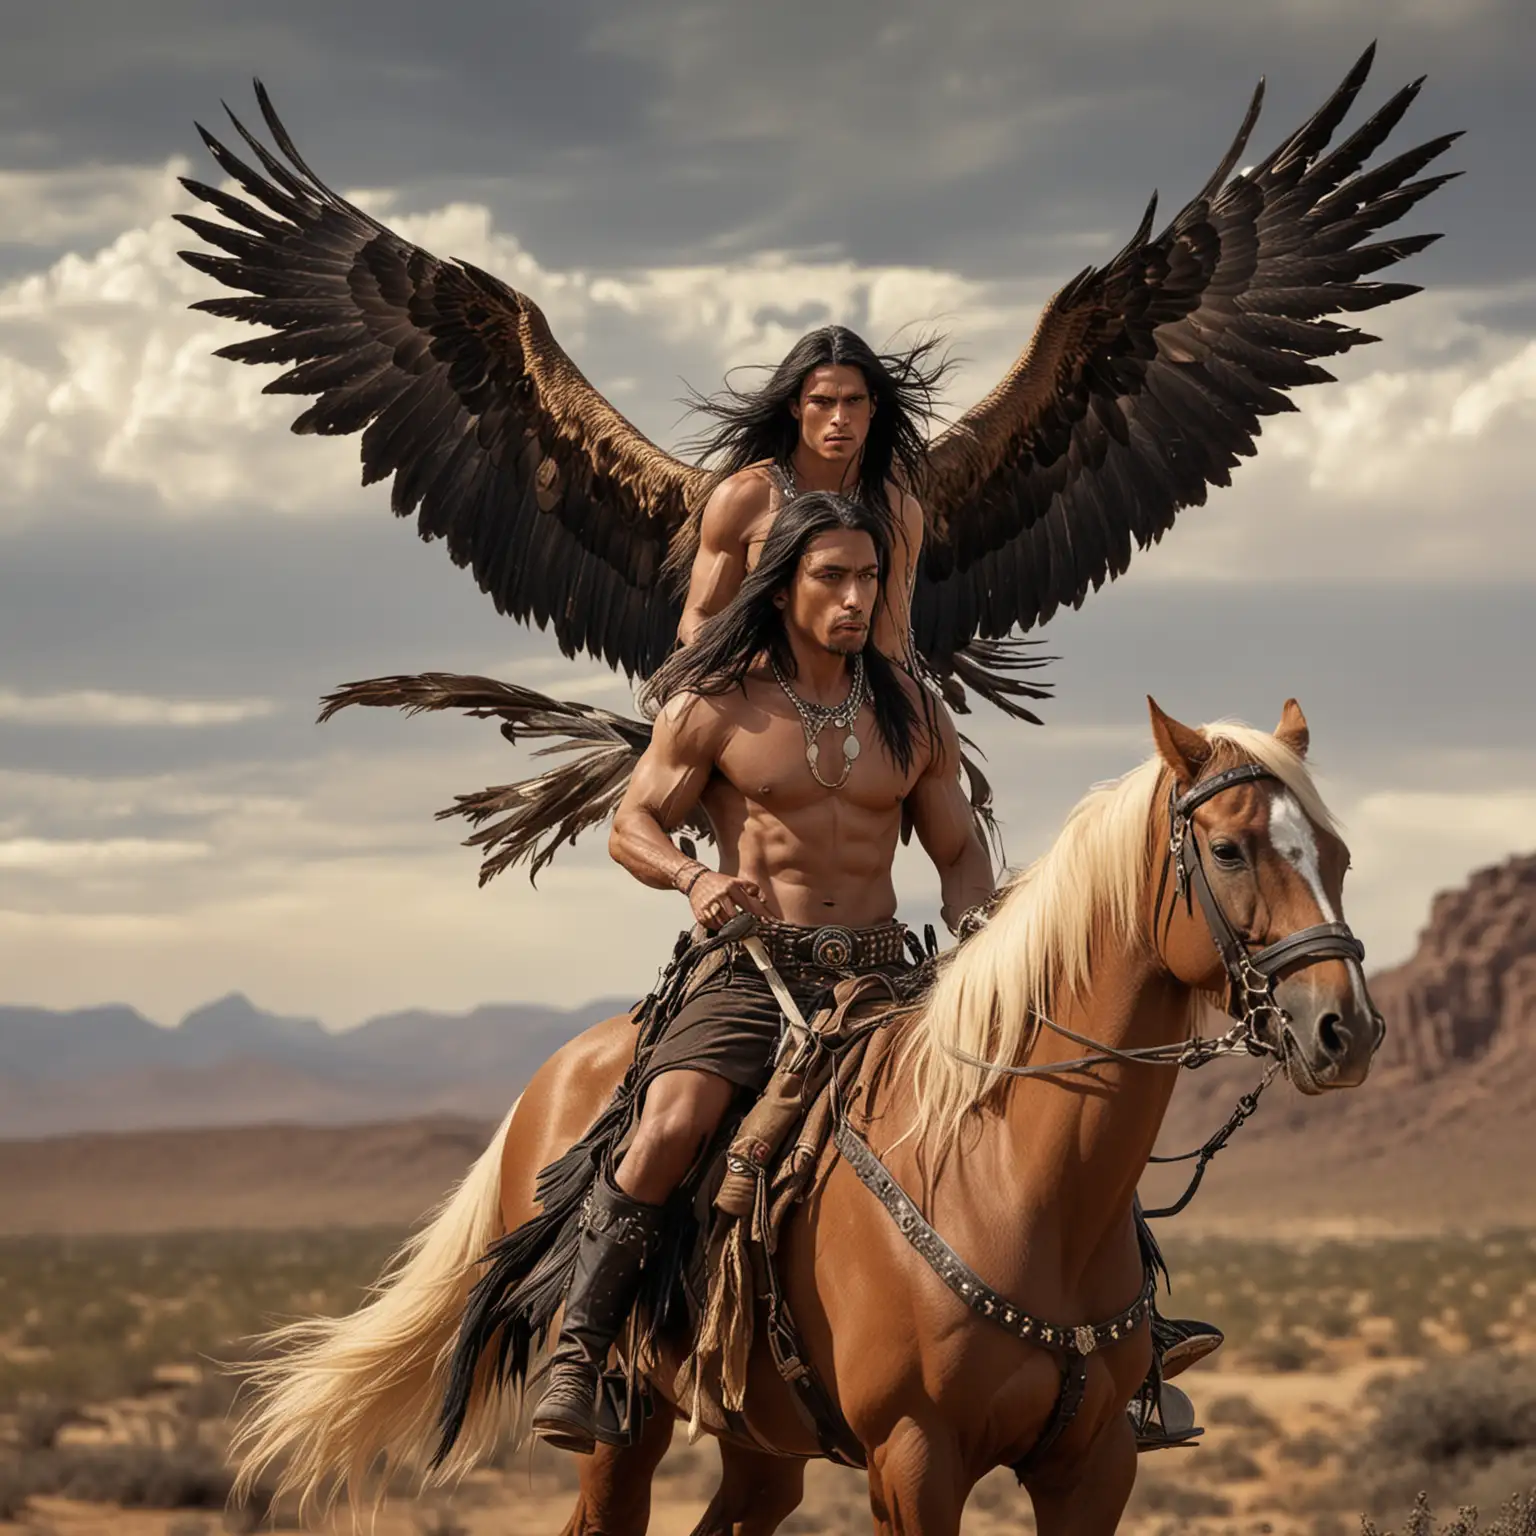 Guerrero apache alto musculoso guapo de cabellos negros largos con grandes alas largas de aguila que le salen de la espalda ,va volando sobre el  desierto y de fondo dos hermosas mujeres rubias a caballo persiguiendolo